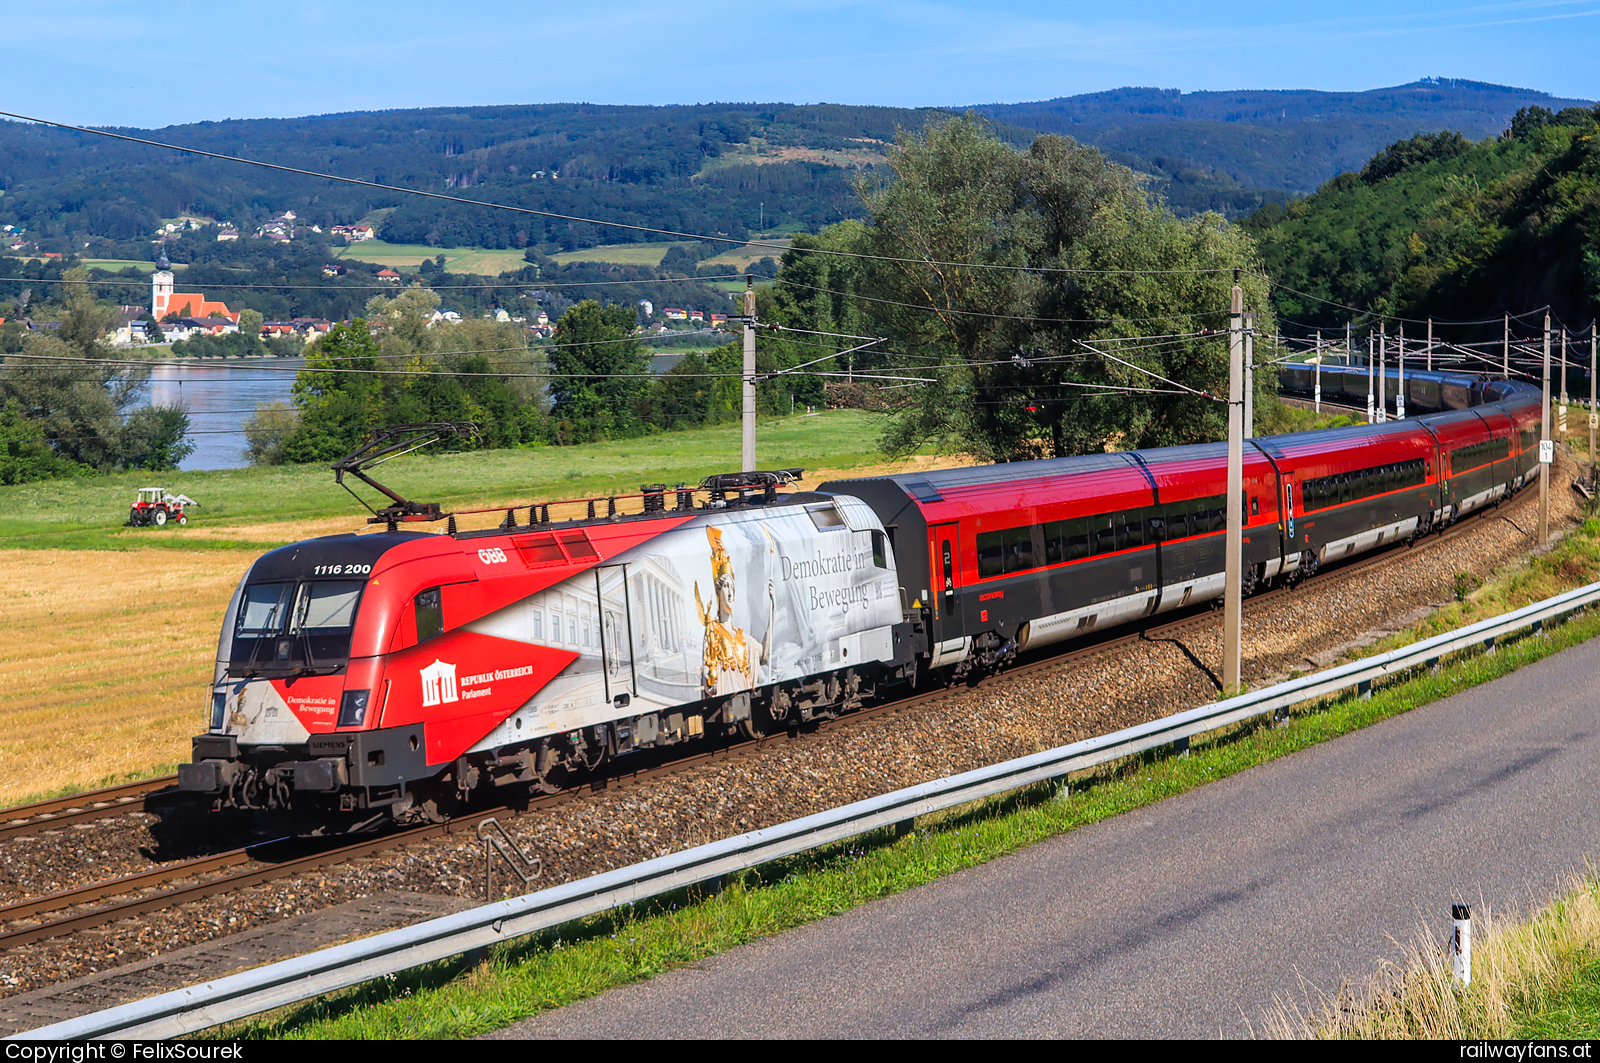 ÖBB 1116 200 in Sarling - Umleitungsverkehr aufgrund einer Baustelle auf der Schnellfahrstrecke  Westbahn | Knoten Rohr - Salzburg Hbf Railwayfans